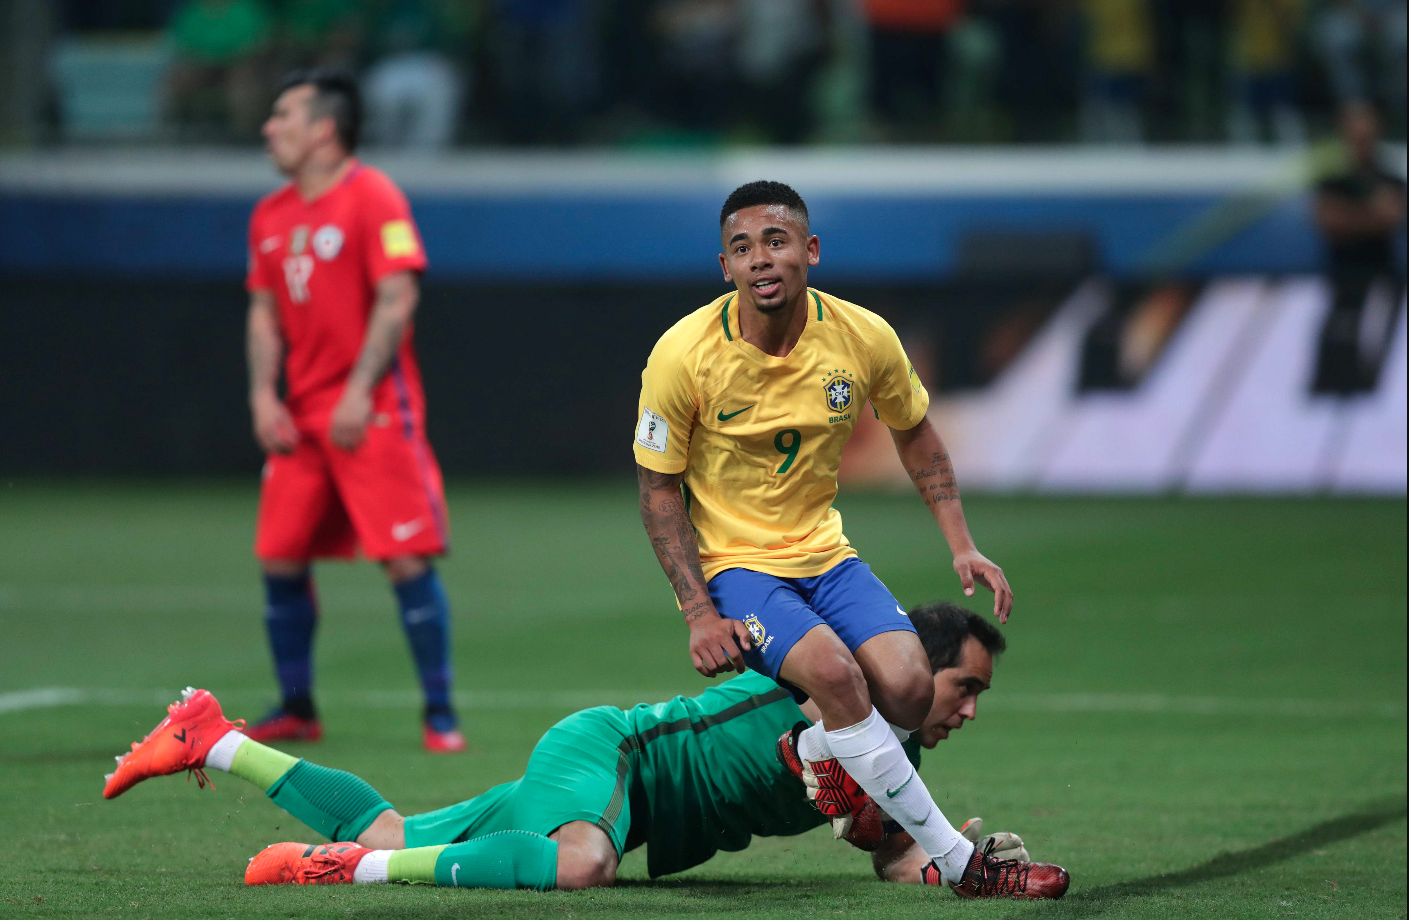 El último Chile vs. Brasil tuvo lugar en octubre de 2017 acabó 3-0 a favor del Scratch. Foto: Efe